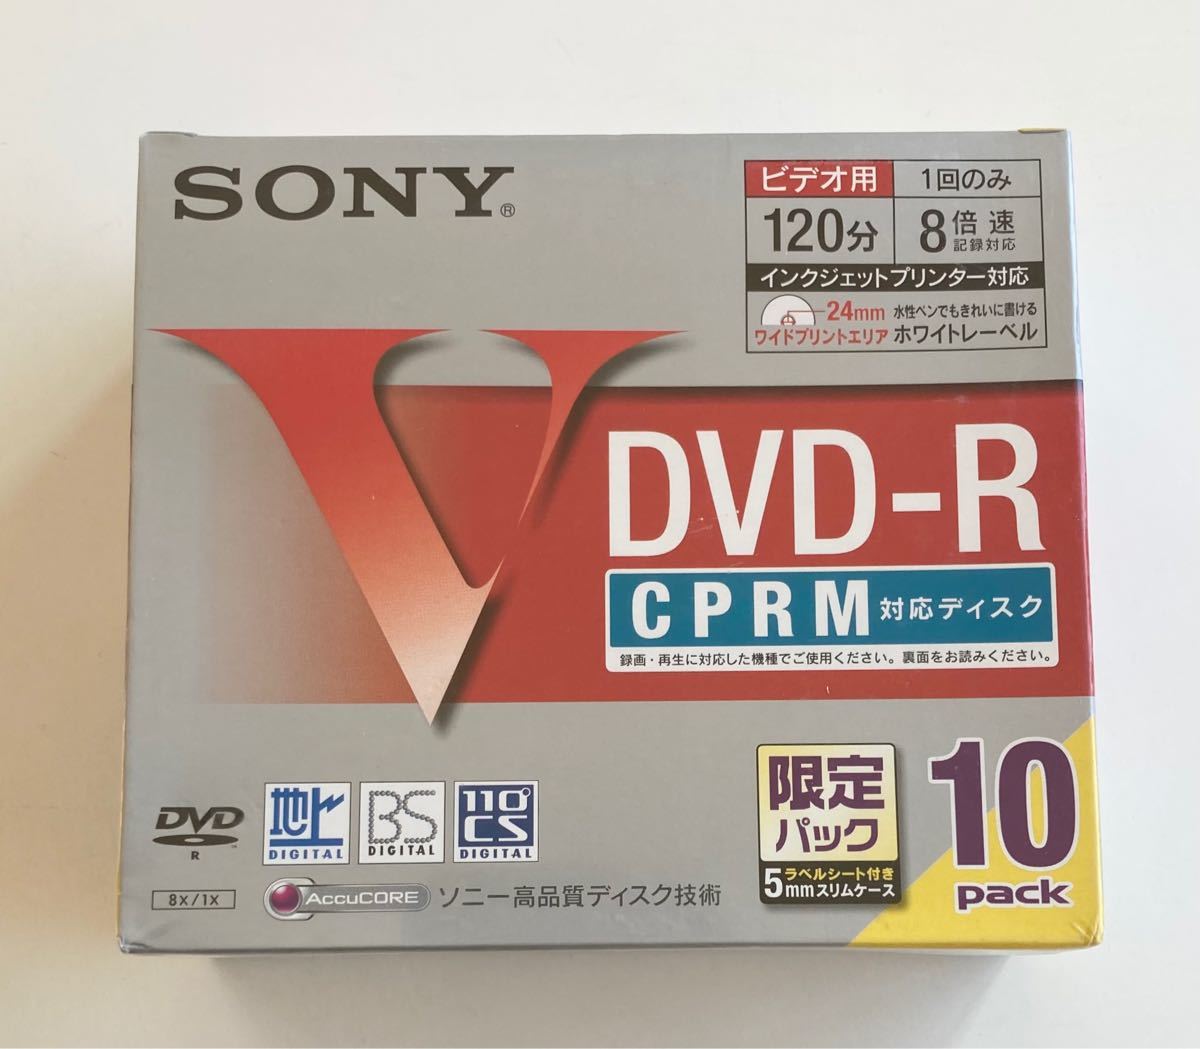 ソニー DVD-R ディスク 録画用 CPRM対応 8倍速 120分10枚×2